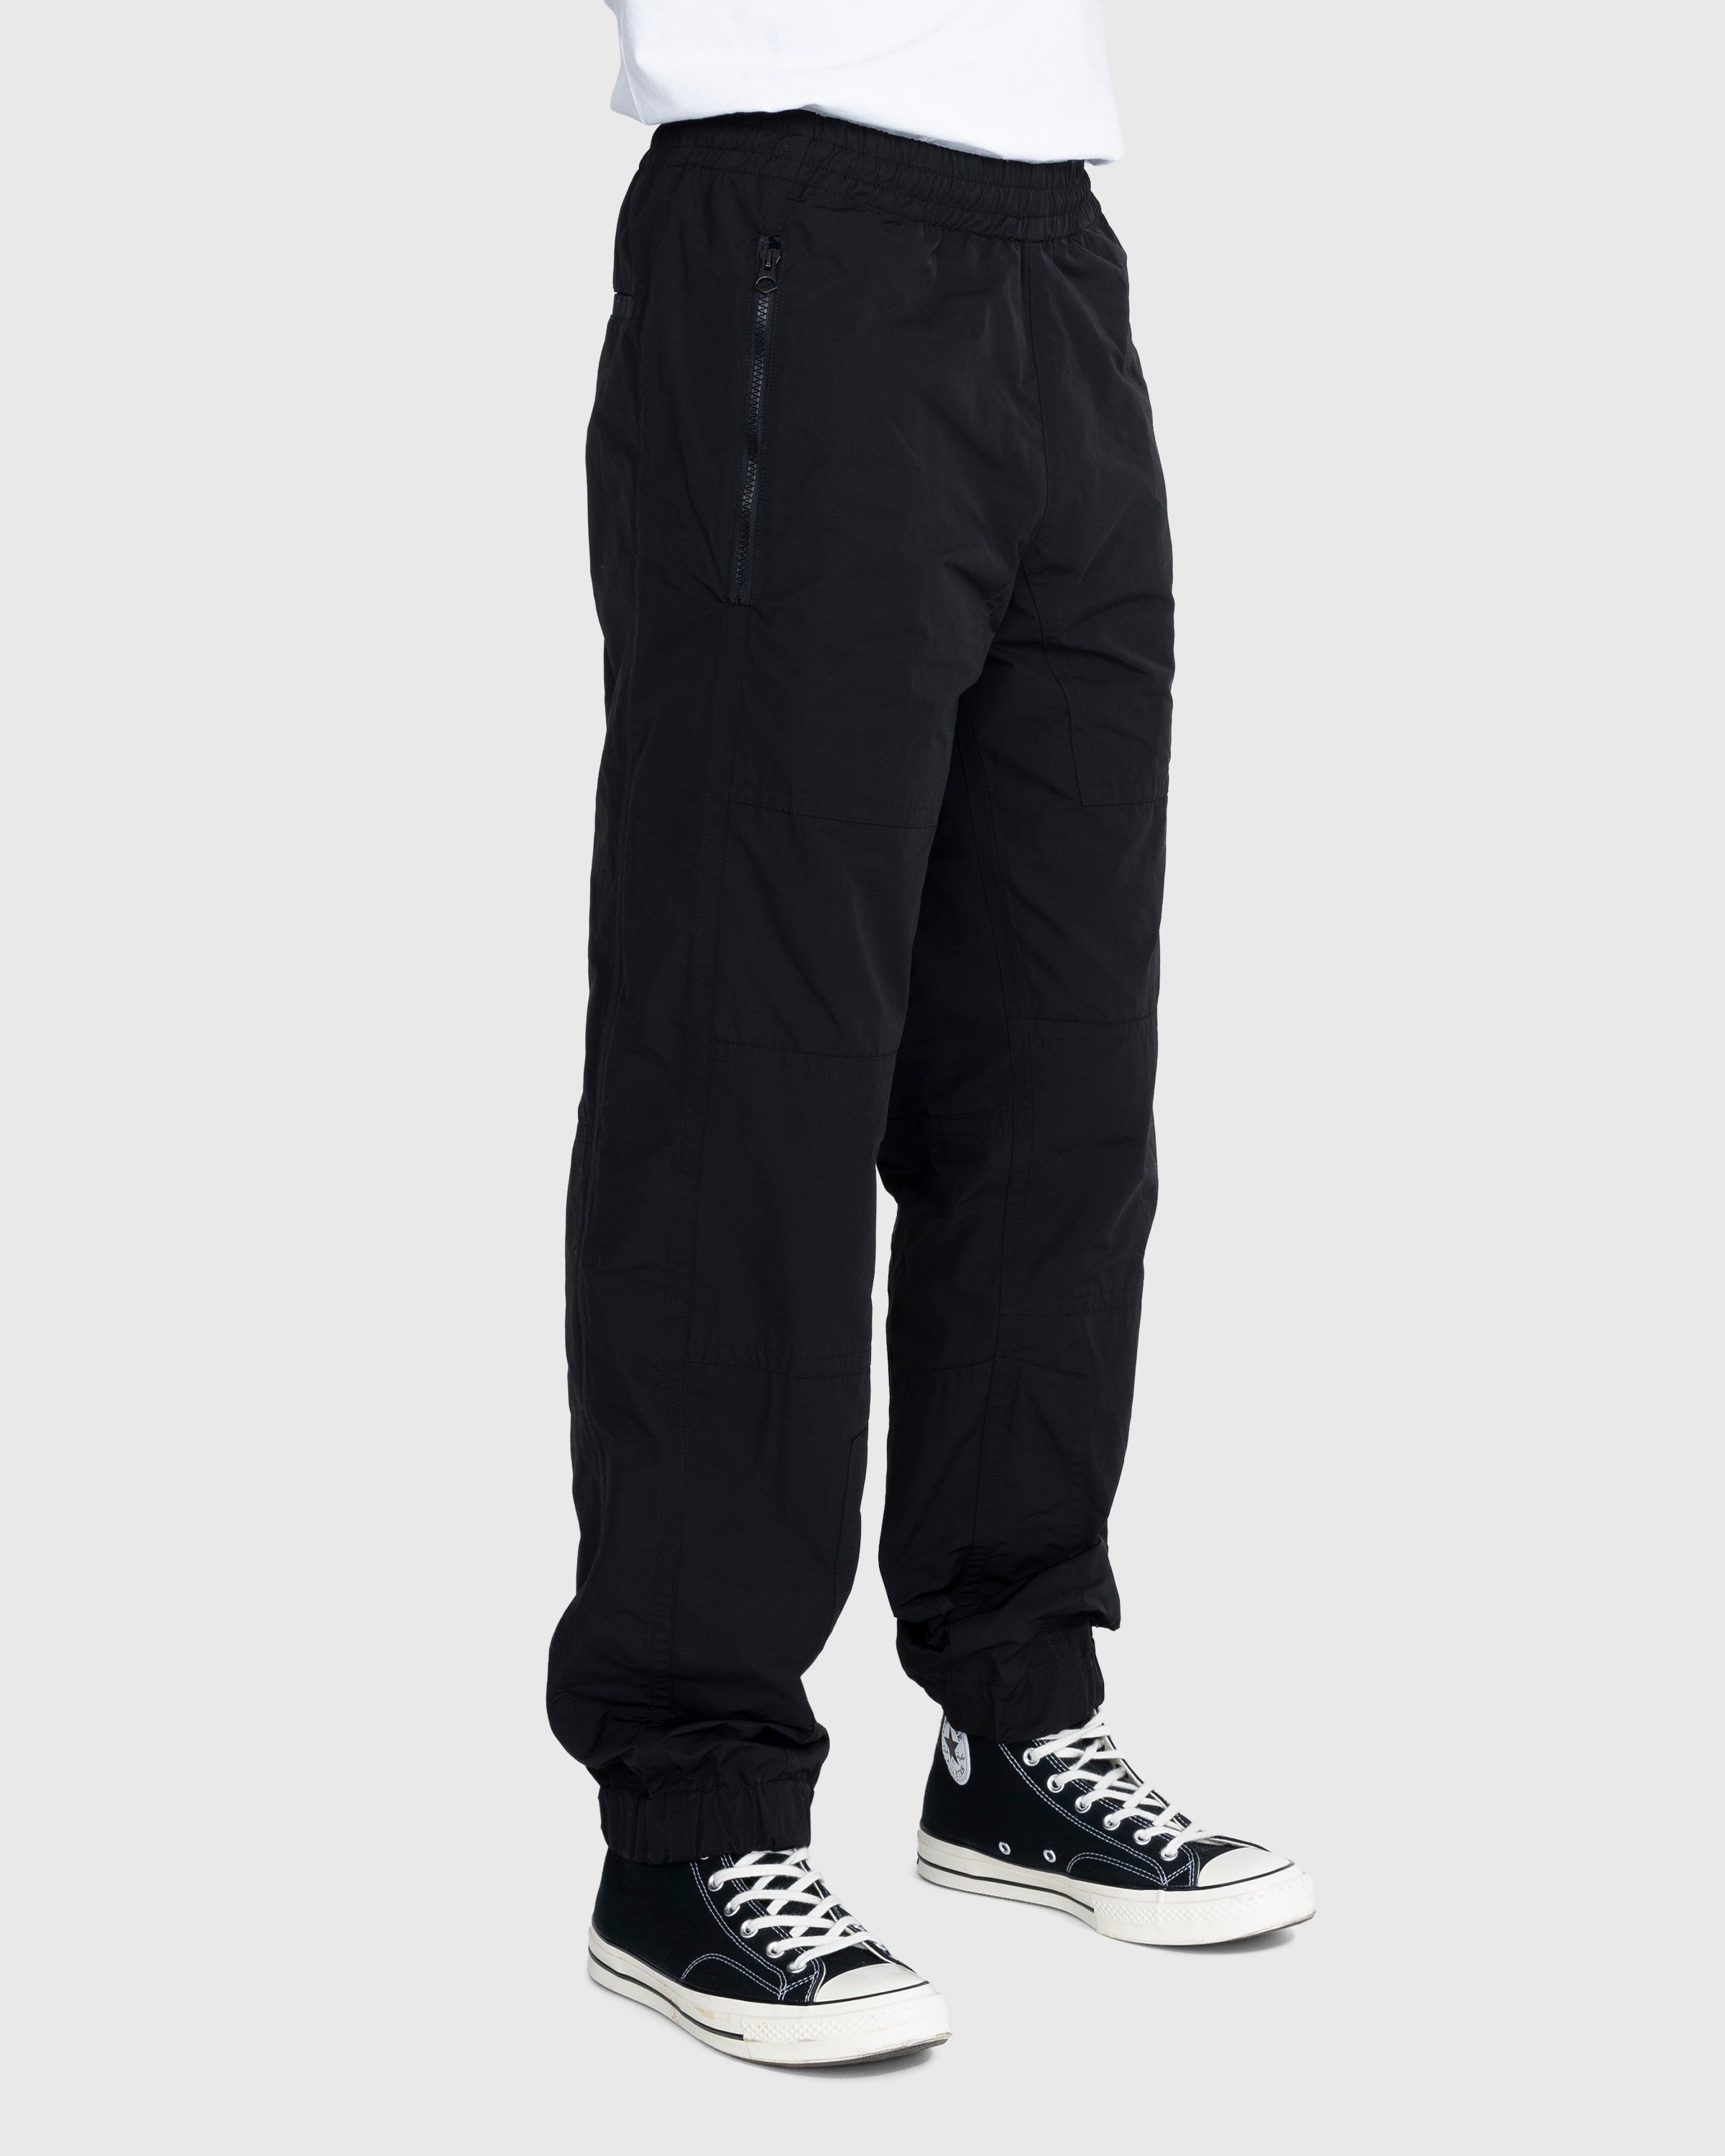 Dries van Noten - Peatt Pants - Clothing - Black - Image 3